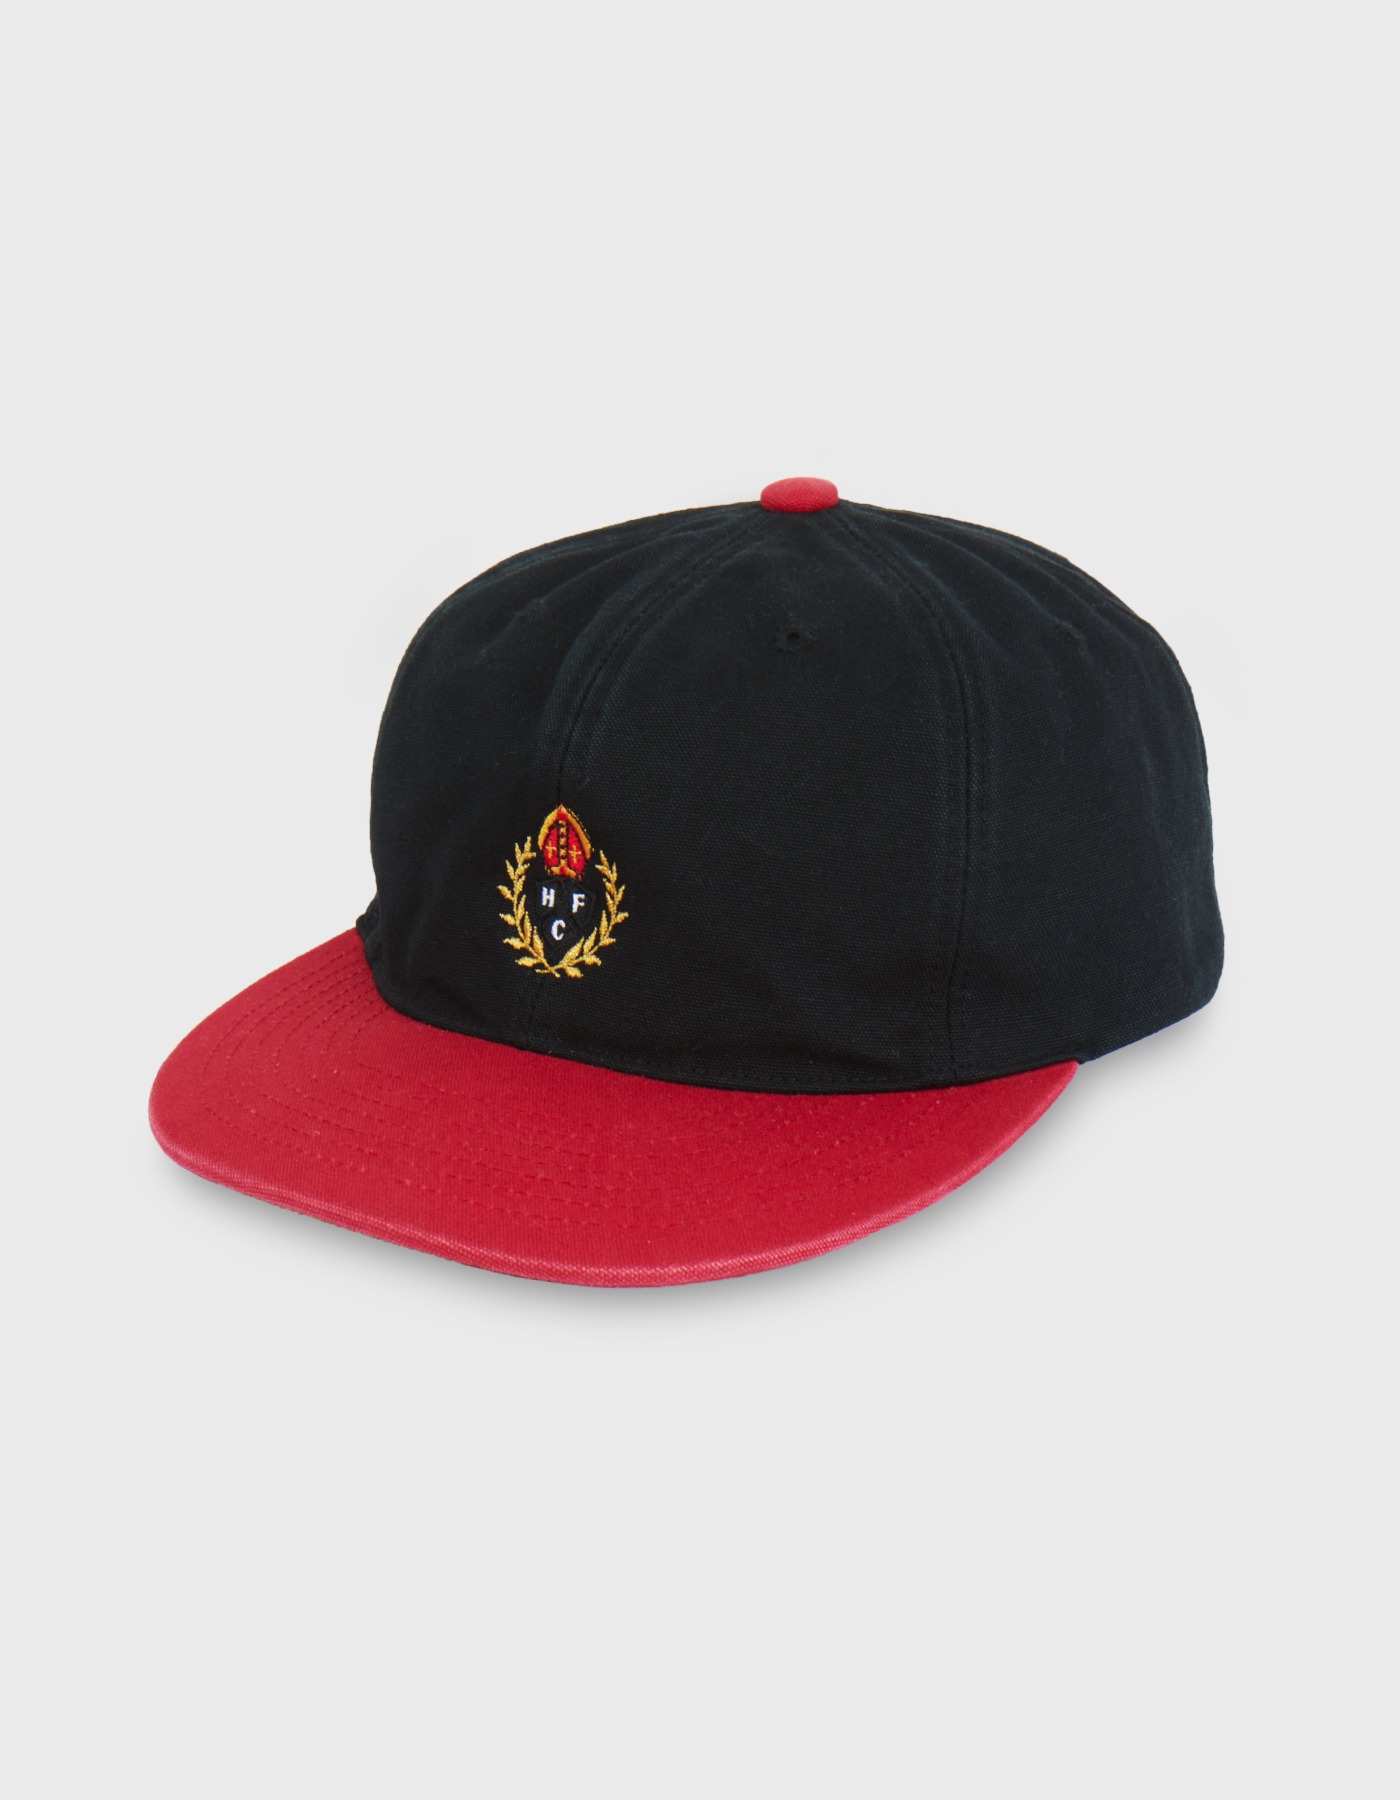 HFC CREST 6 PANEL CAP/ Black-Red